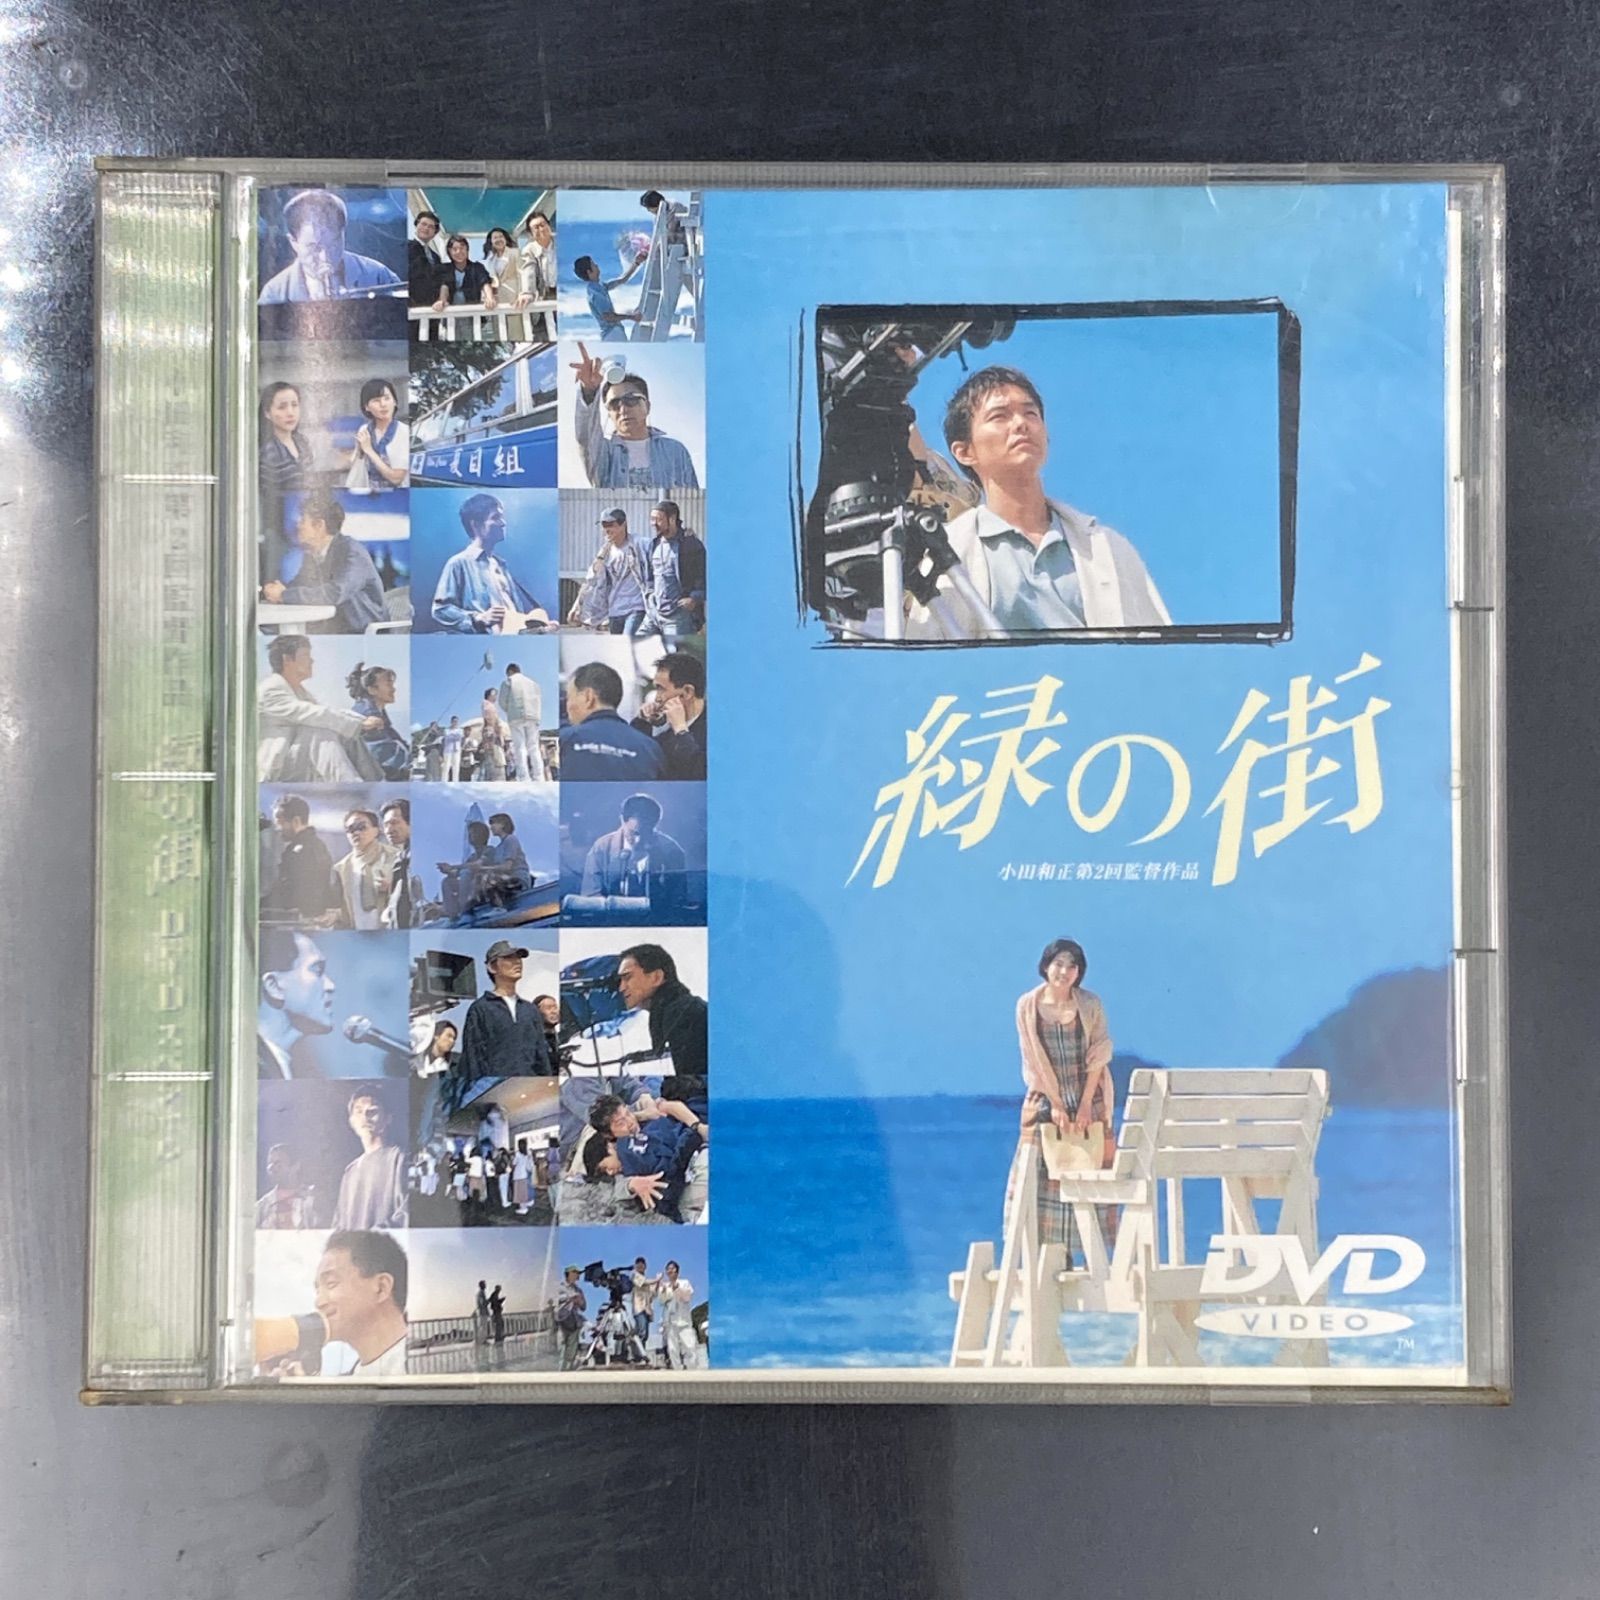 MZ019) DVD 邦画 緑の街 ('98) 小田和正 監督作品 中古 / 映画 日本